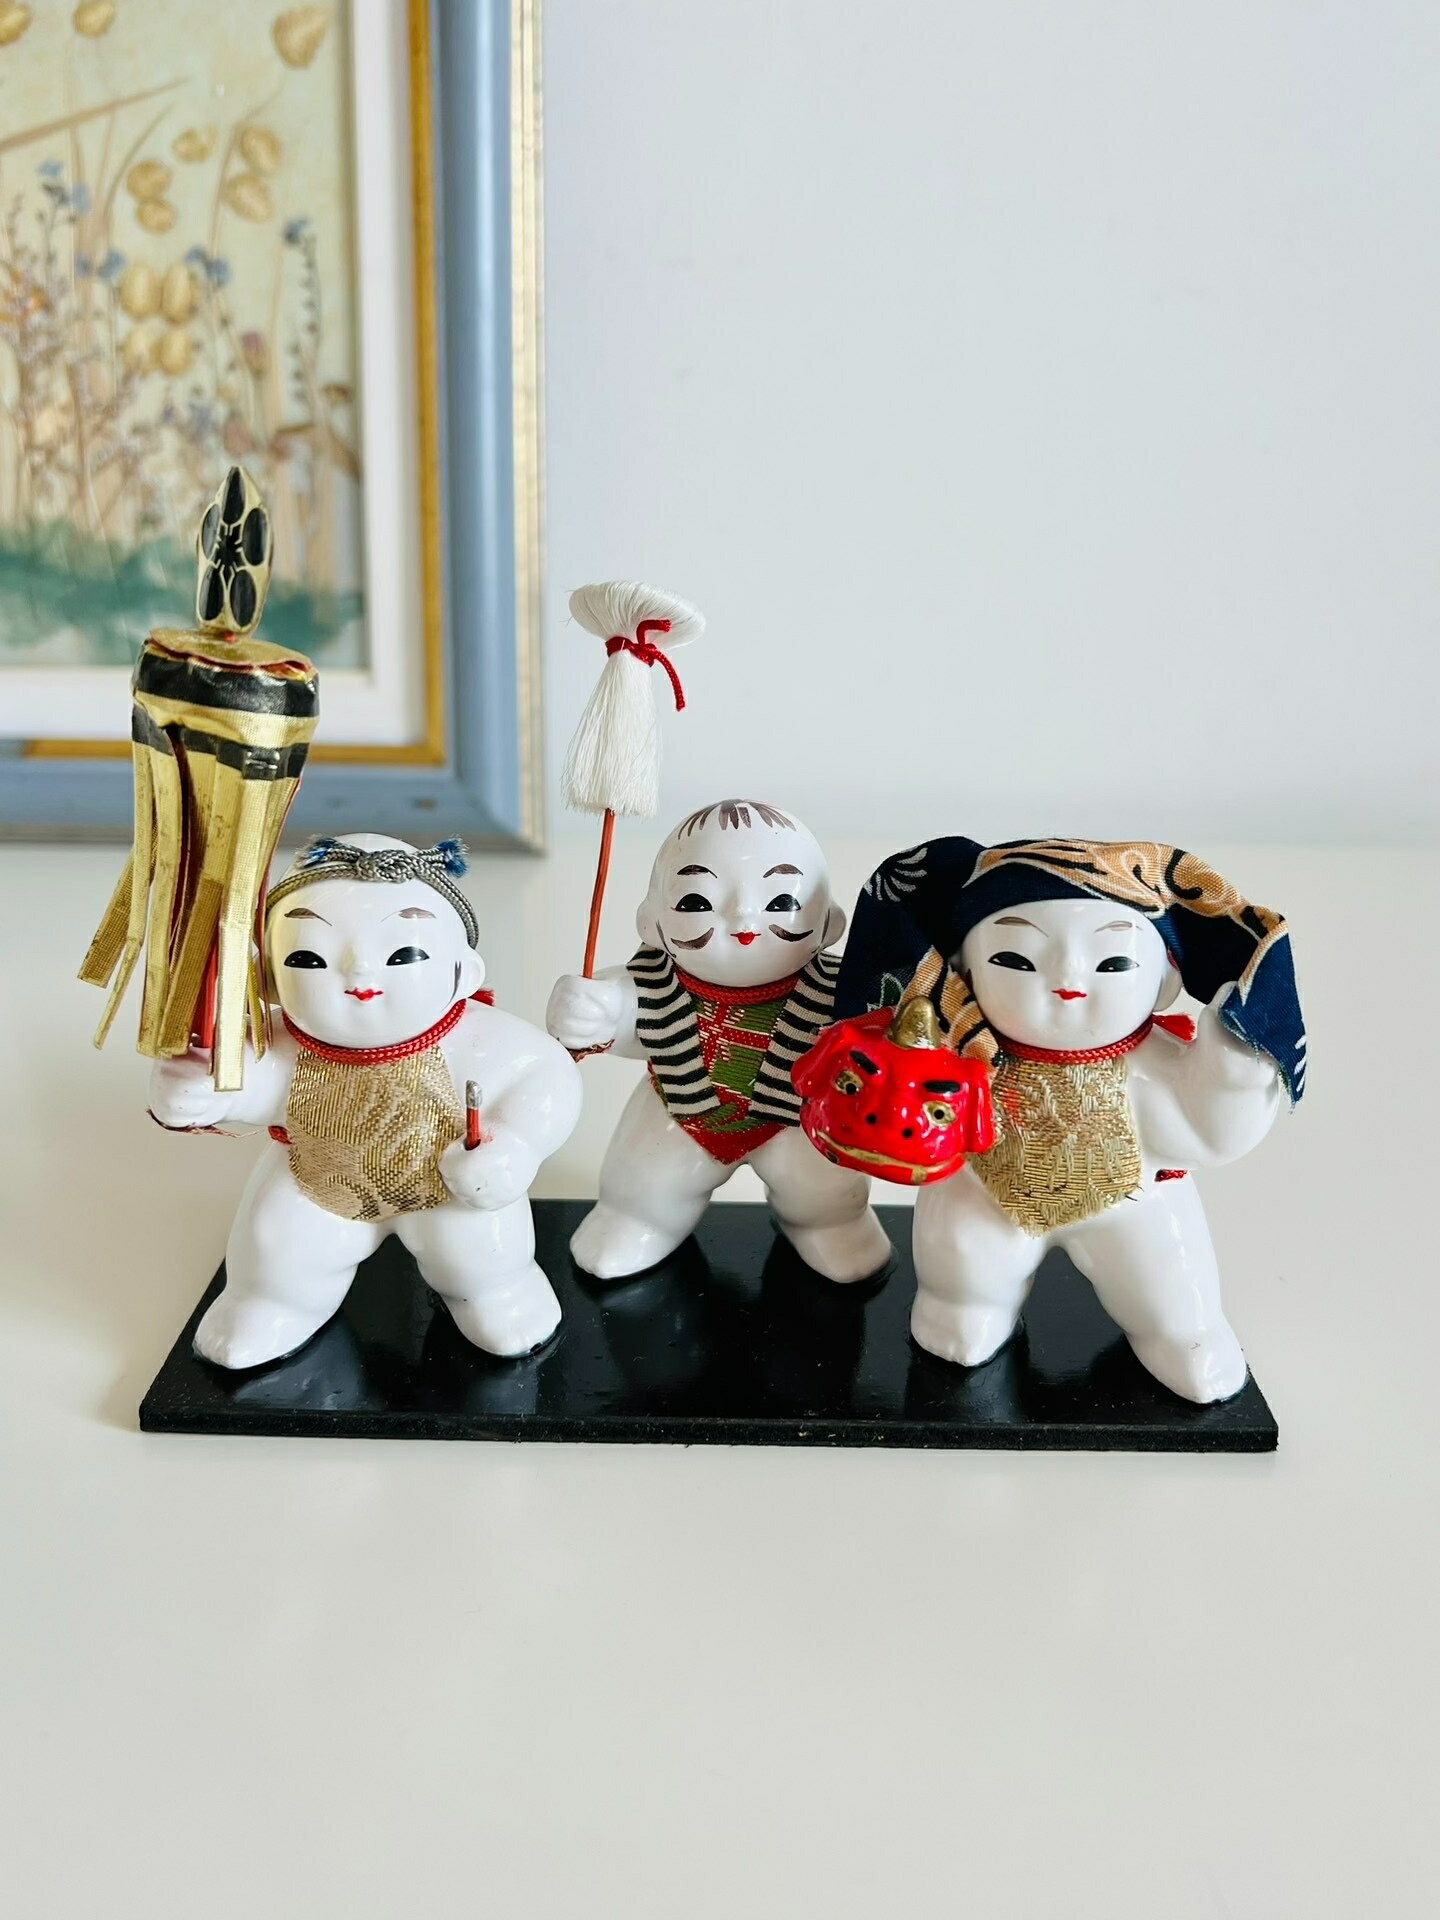 日本昭和 鄉土玩具 三個加賀人形 御所人形 置物擺飾